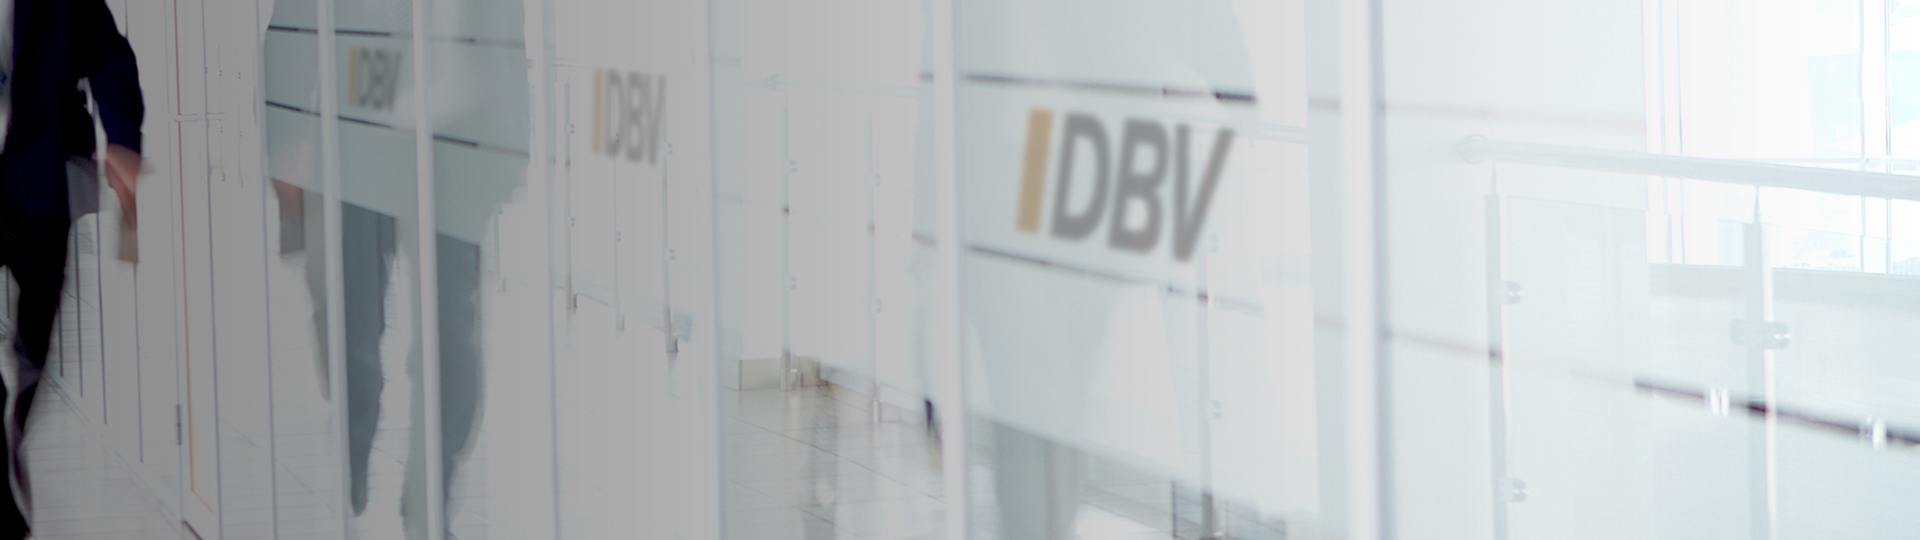 DBV Grünberg Zimmer oHG Inh. Dern Otto Dietl | Dienstunfähigkeitsversicherung 